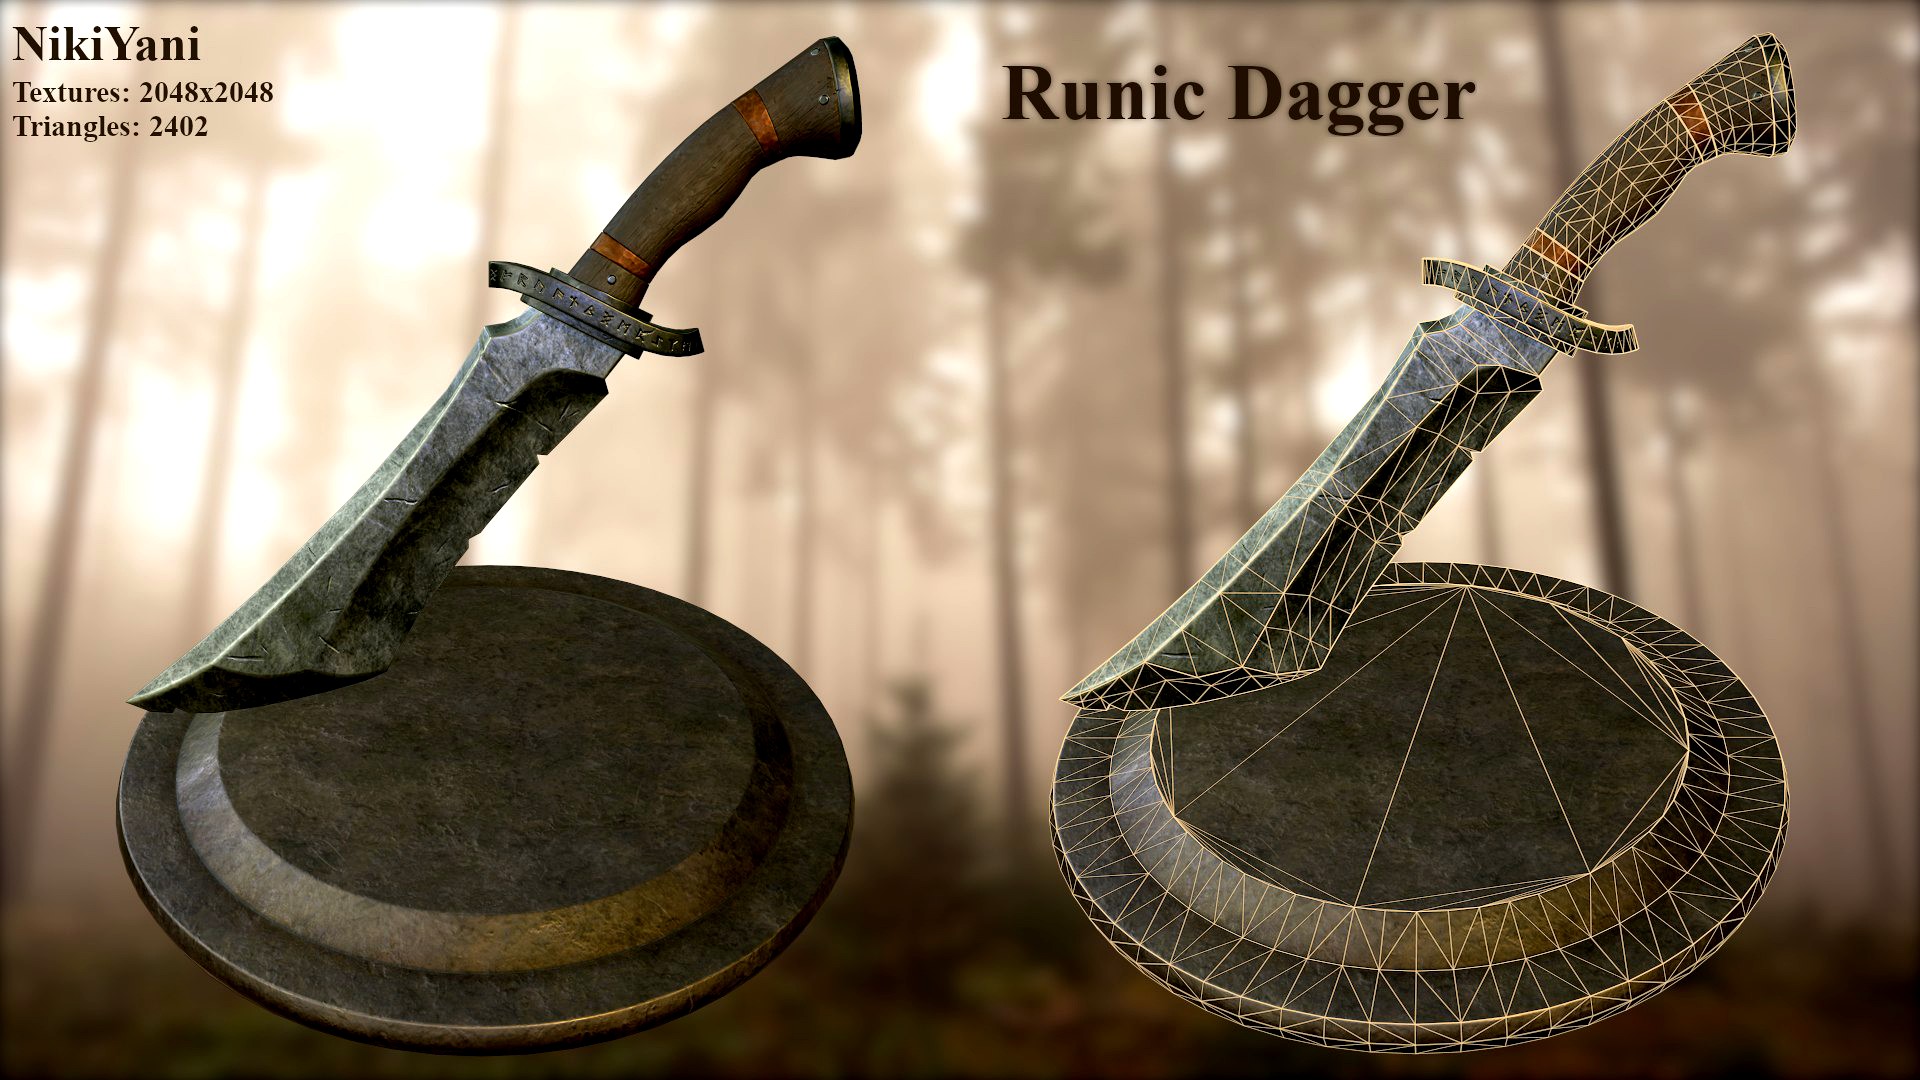 Runic dagger